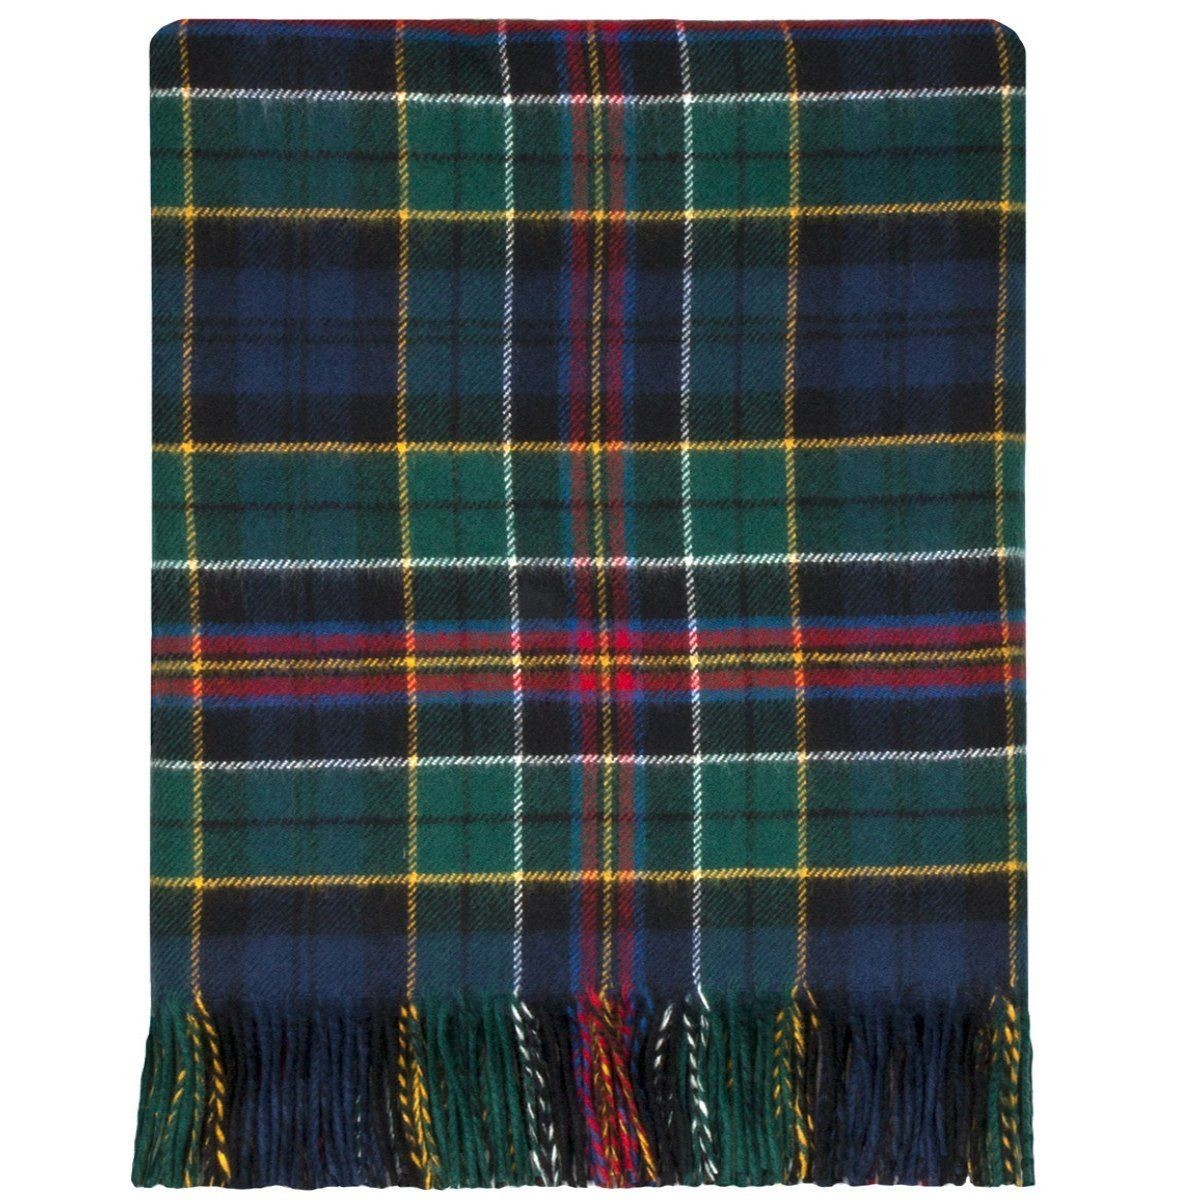 100% Lambswool Blanket in Allison Modern by Lochcarron of Scotland